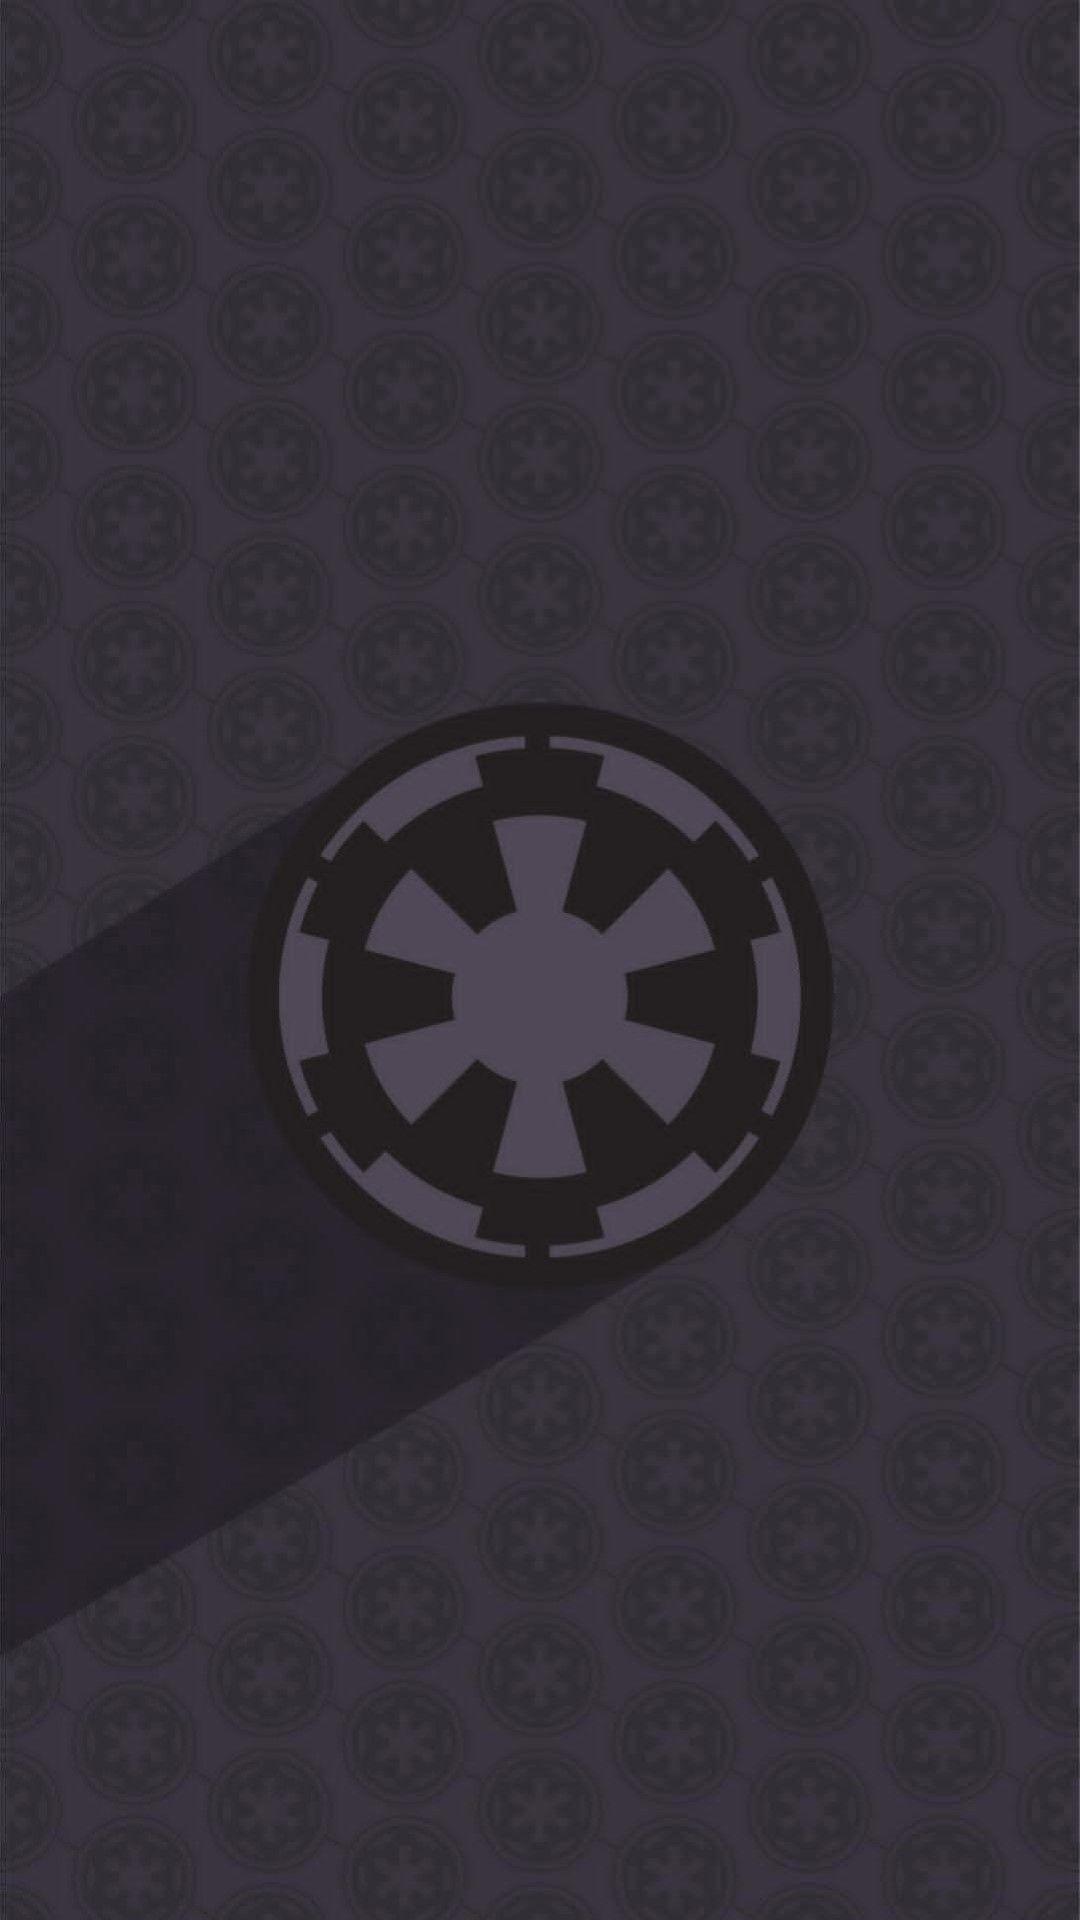 Imperial. Star wars. Star wars wallpaper, Star Wars, Stars